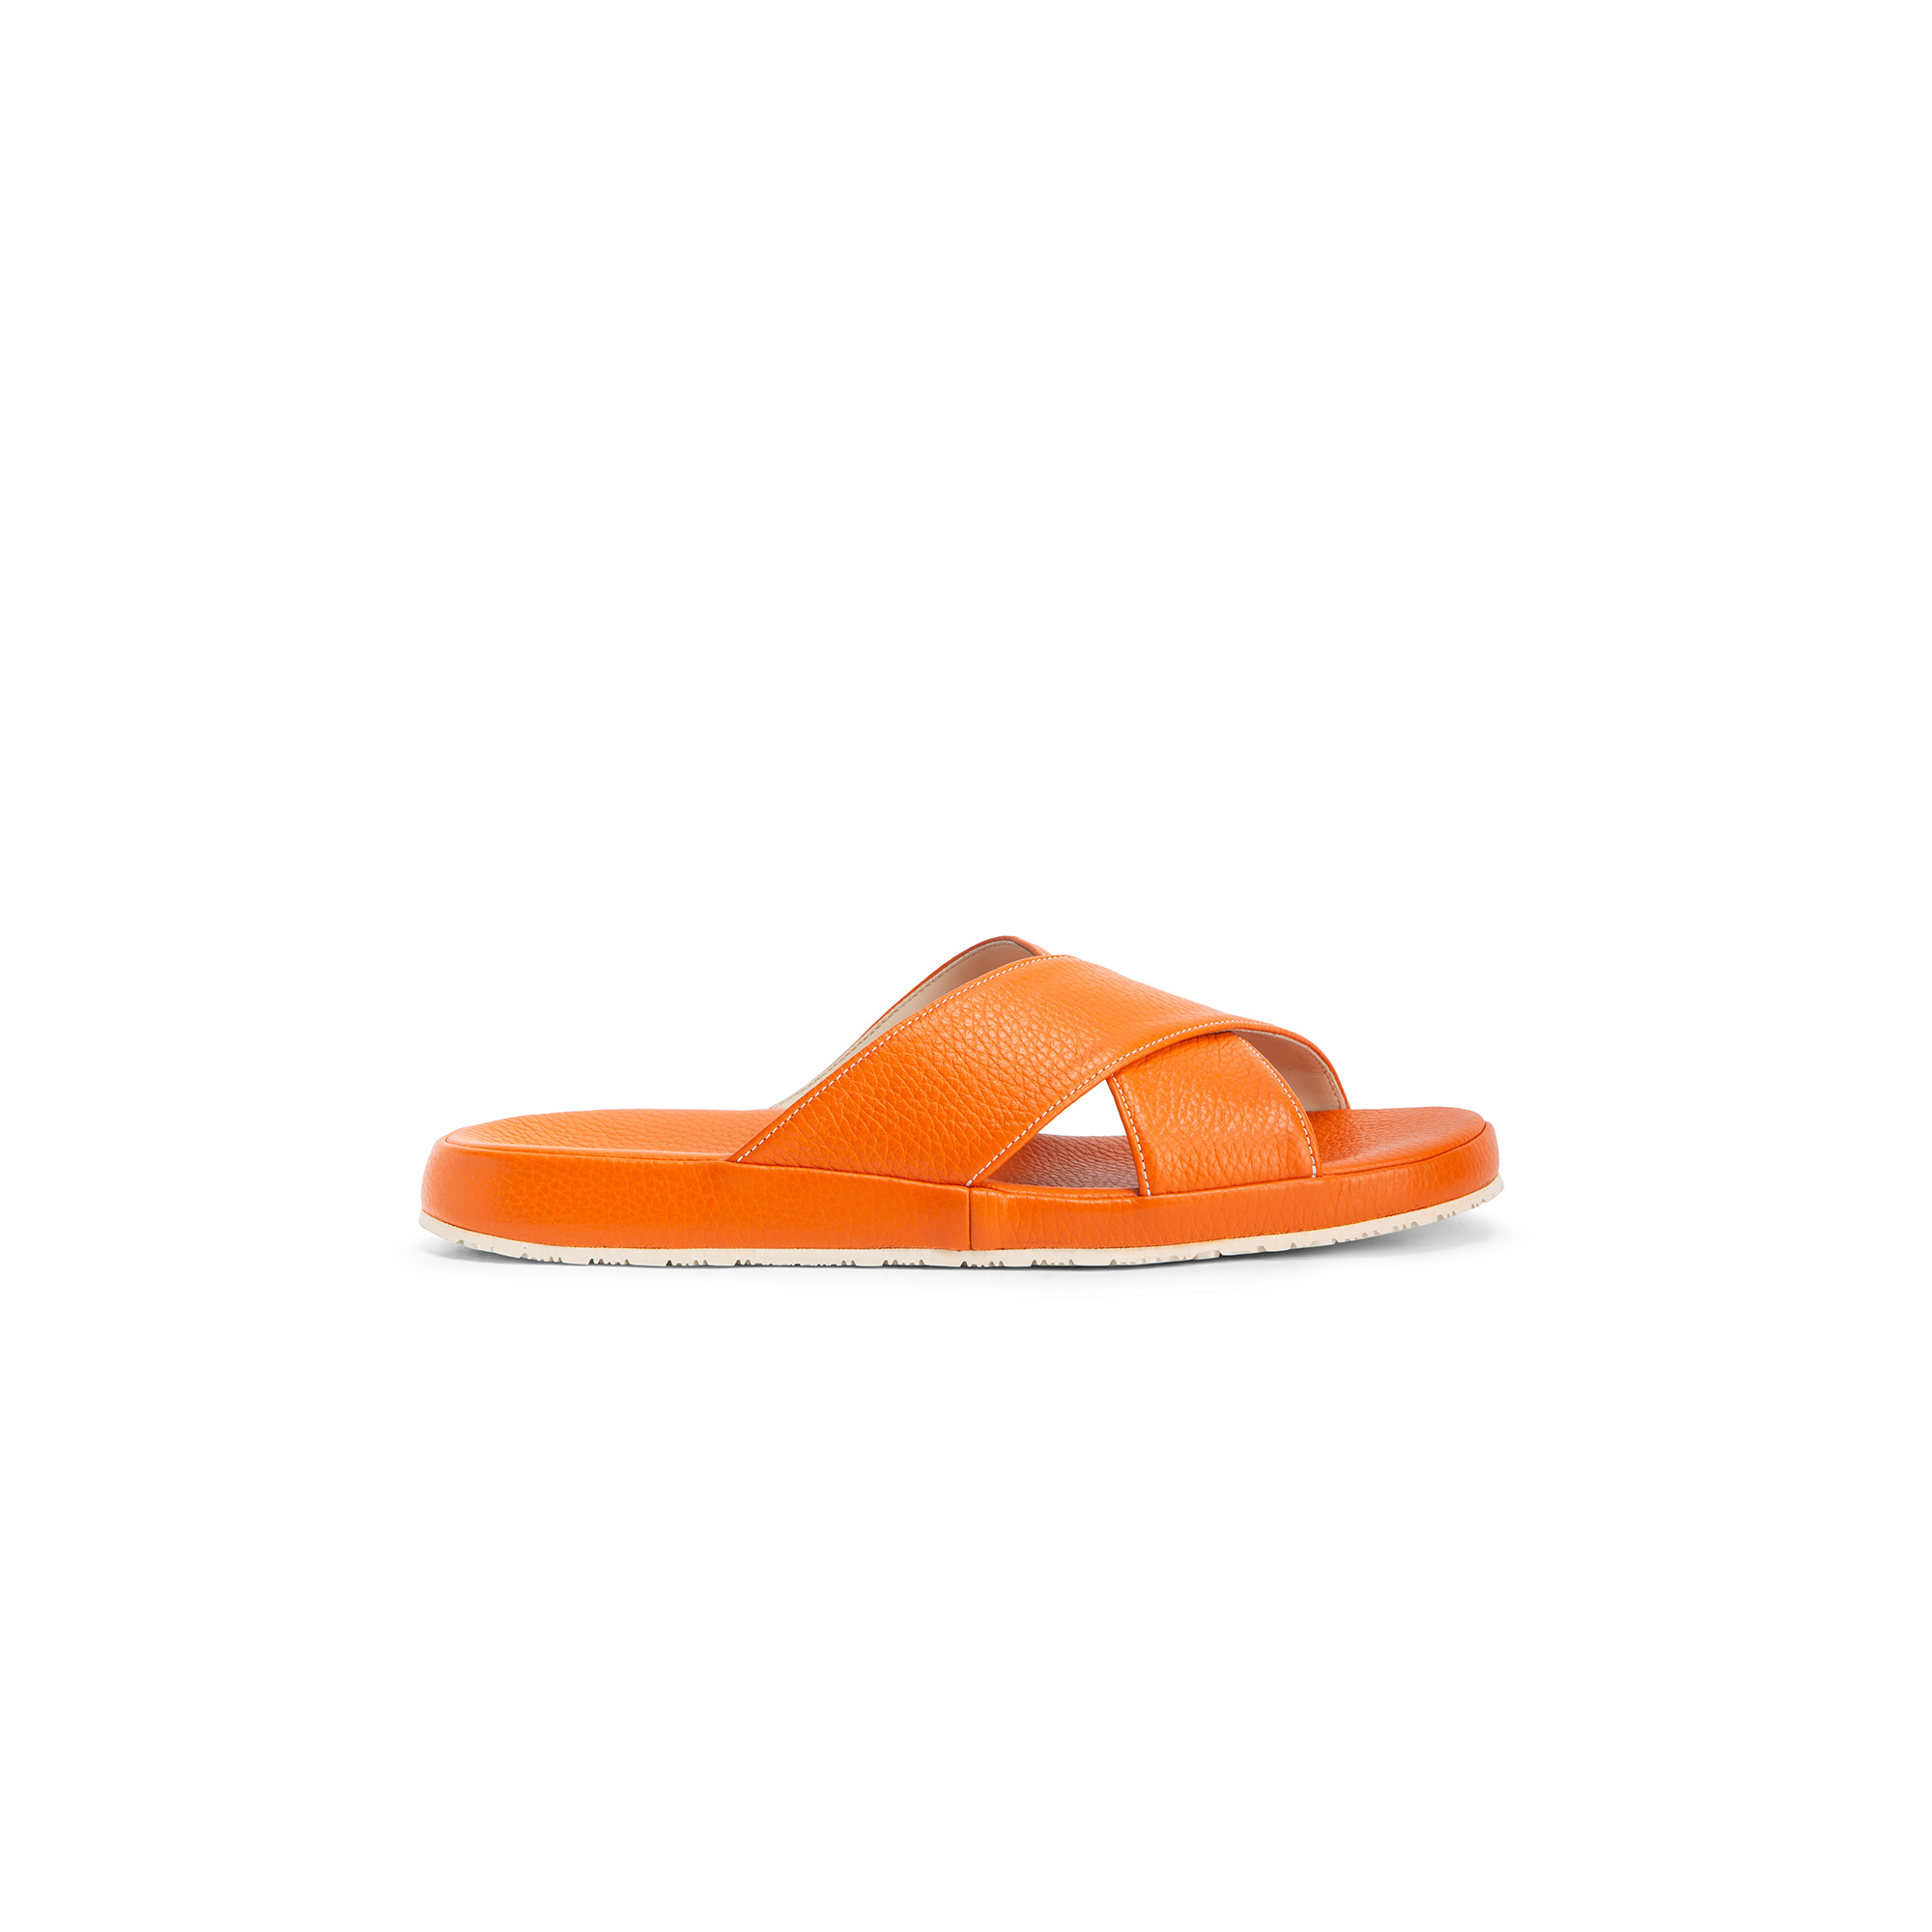 Outside orange deer leather sandal - Farfalla italian slippers